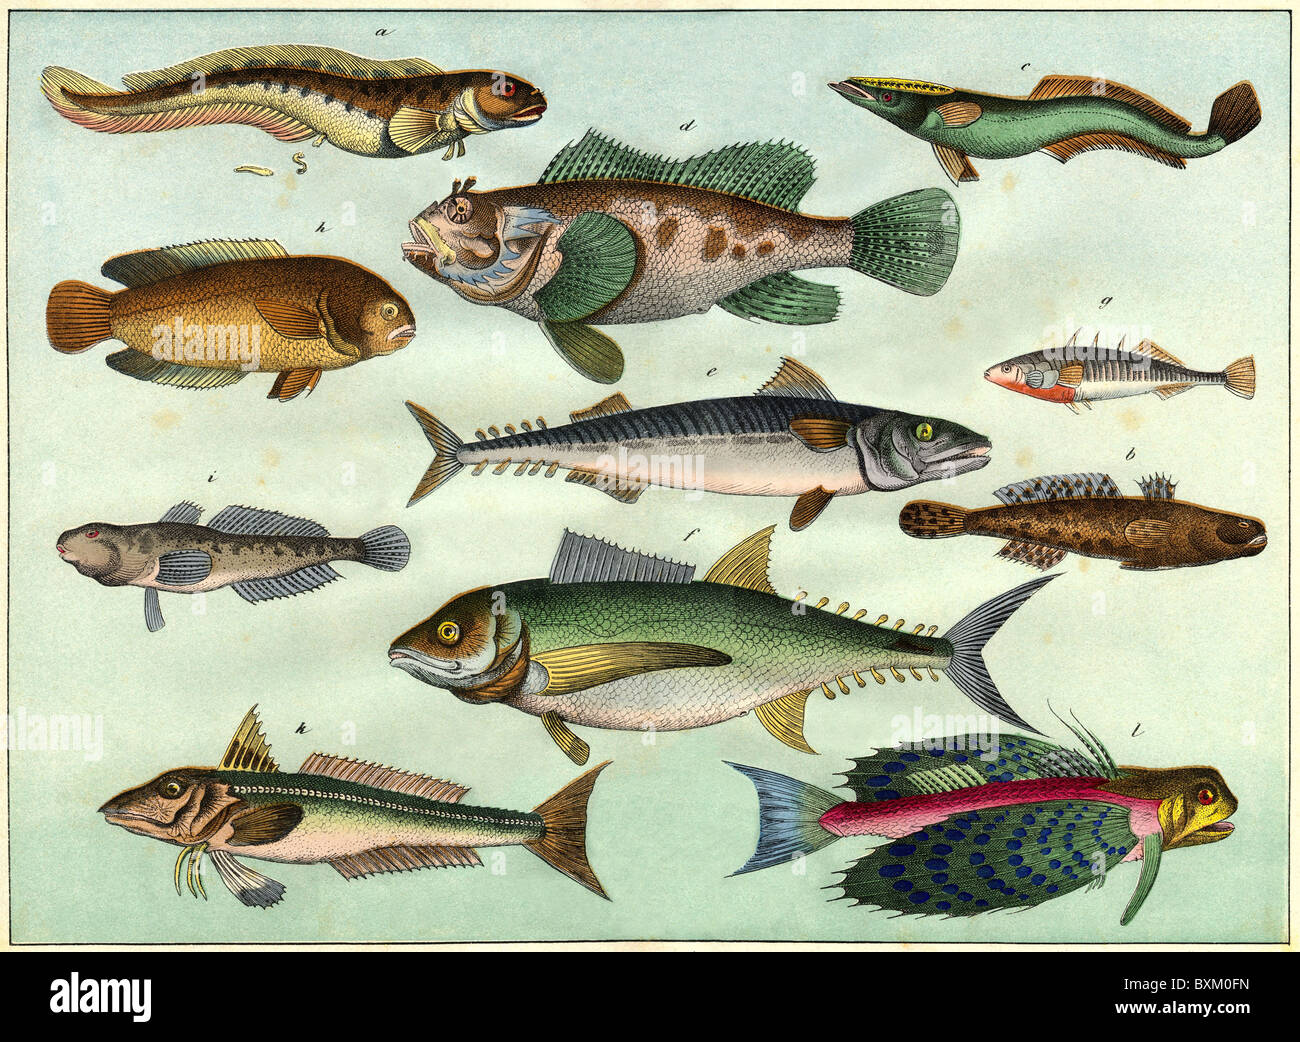 zoologie / Tiere, Fische, dekorative Lithographie mit verschiedenen Fischarten, Deutschland, 1870, Additional-Rights-Clearences-not available Stockfoto